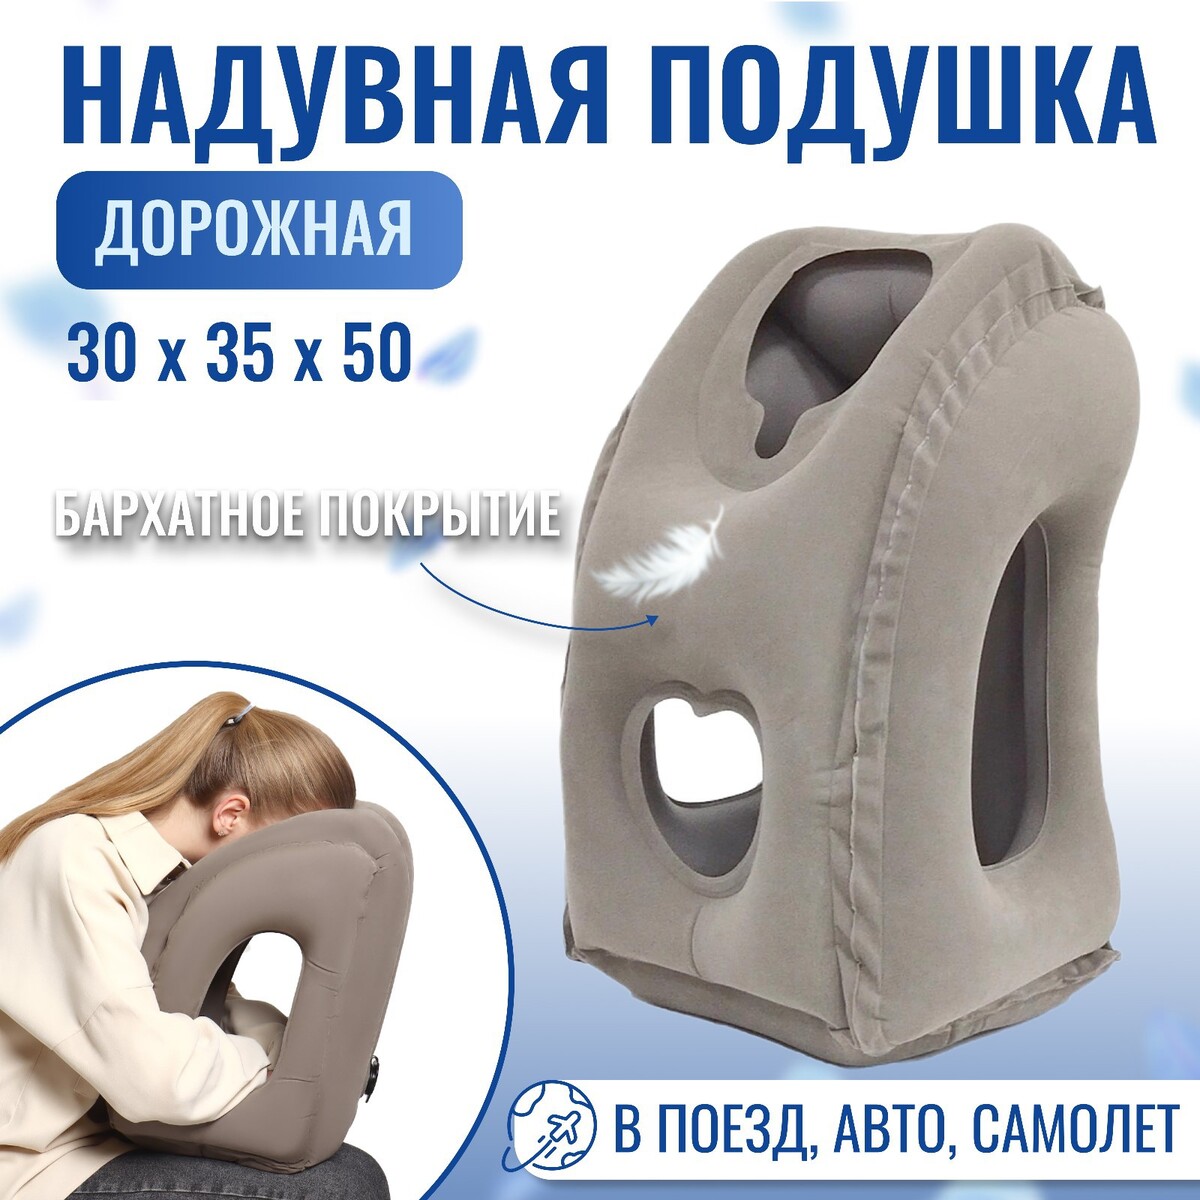 Подушка надувная, 50 × 35 × 30 см, в чехле, цвет серый подушка для шеи дорожная надувная с насосом 47 × 27 см картонная коробка микс